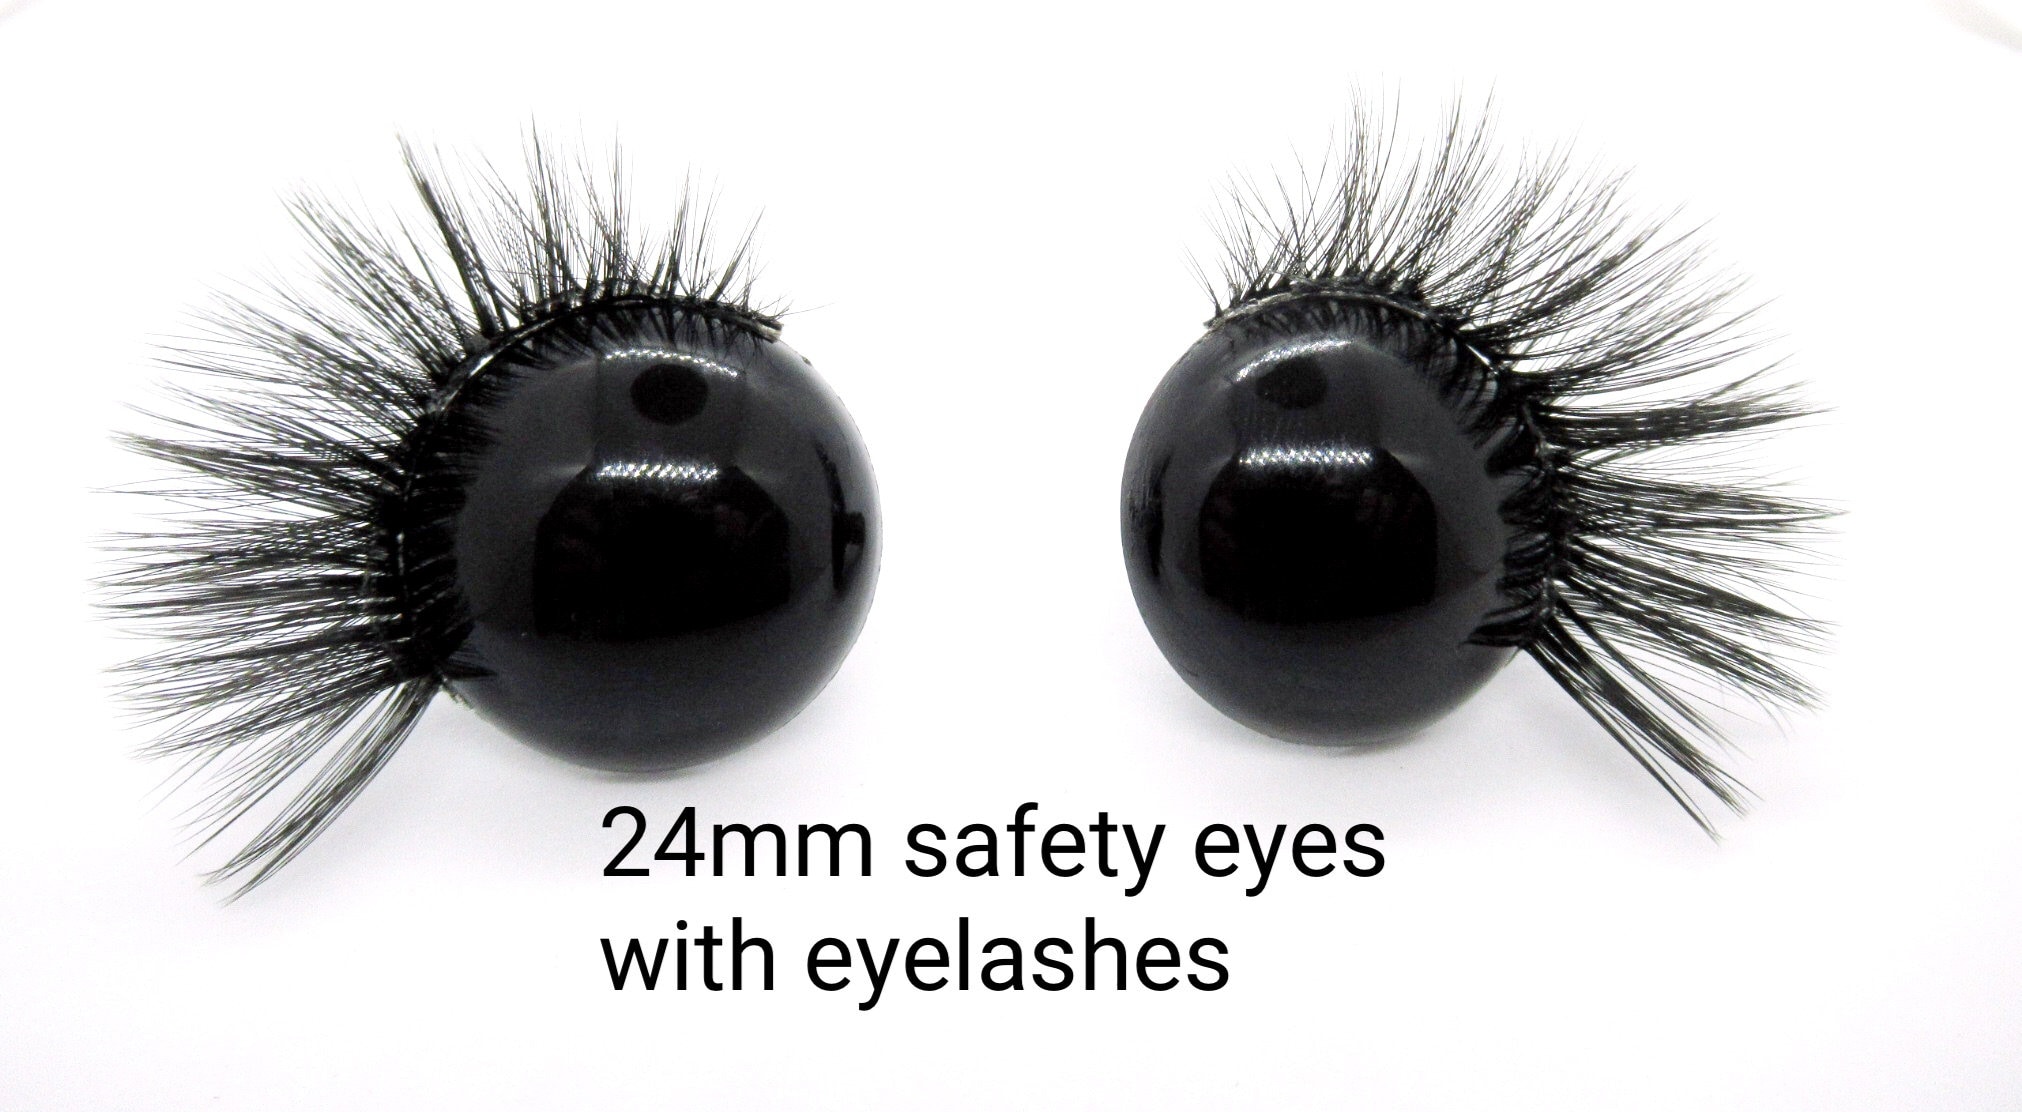 6mm Amigurumi Safety Eyes in Black Plastic for Doll Amigurumi